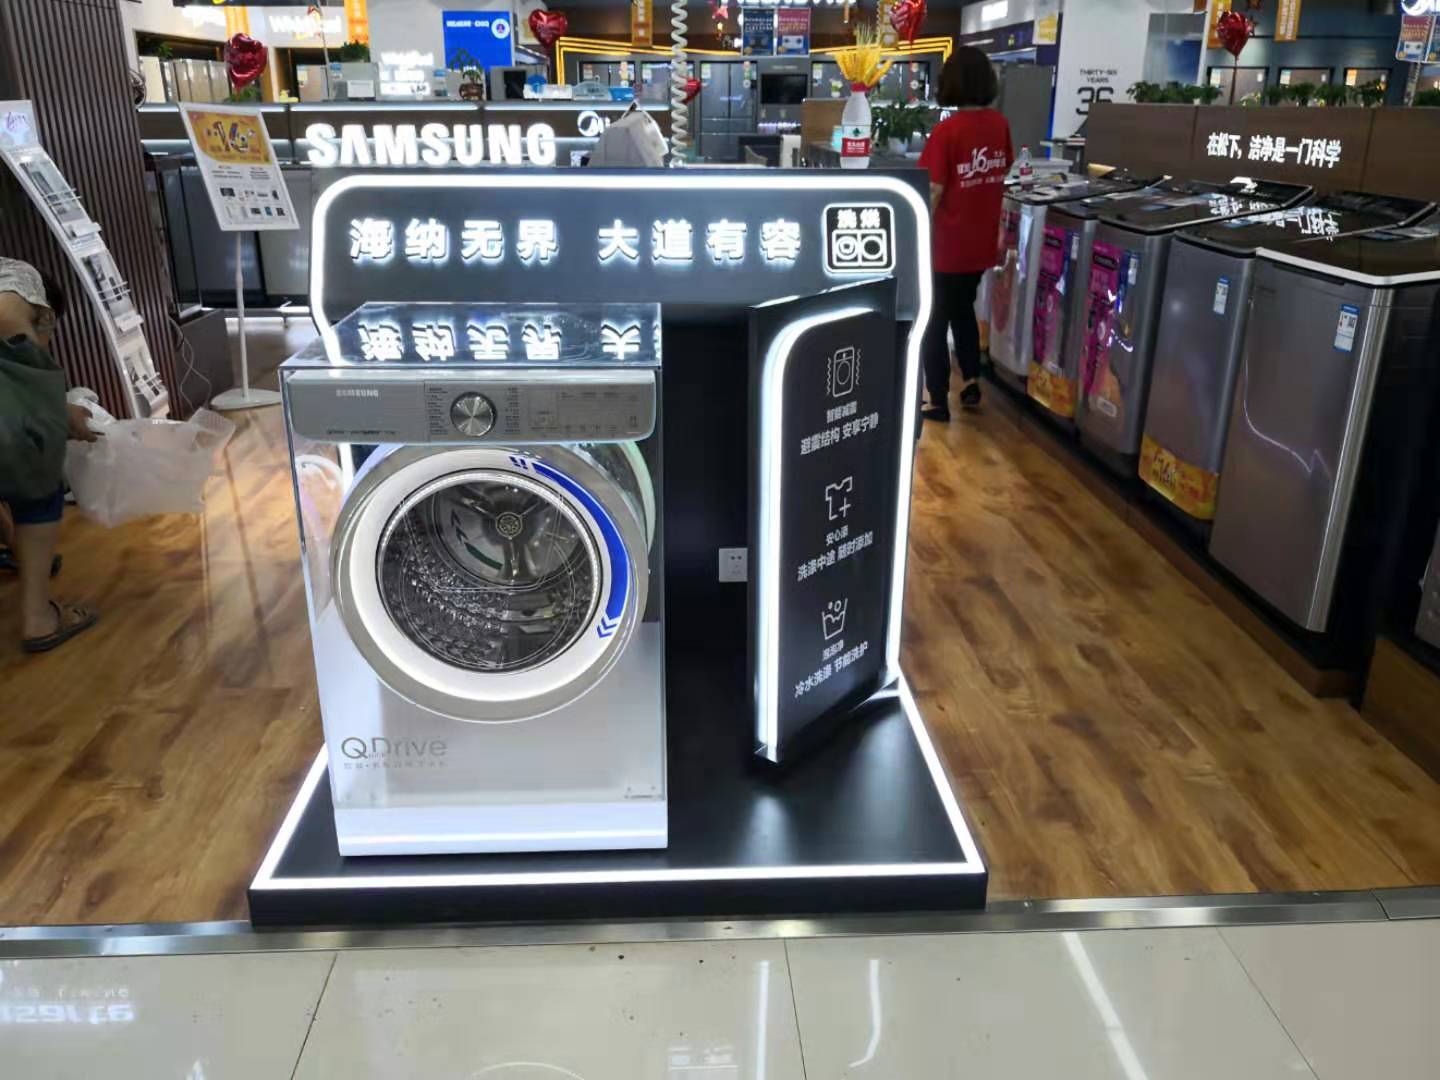 【大连】-国美西安路店 三星 洗衣机